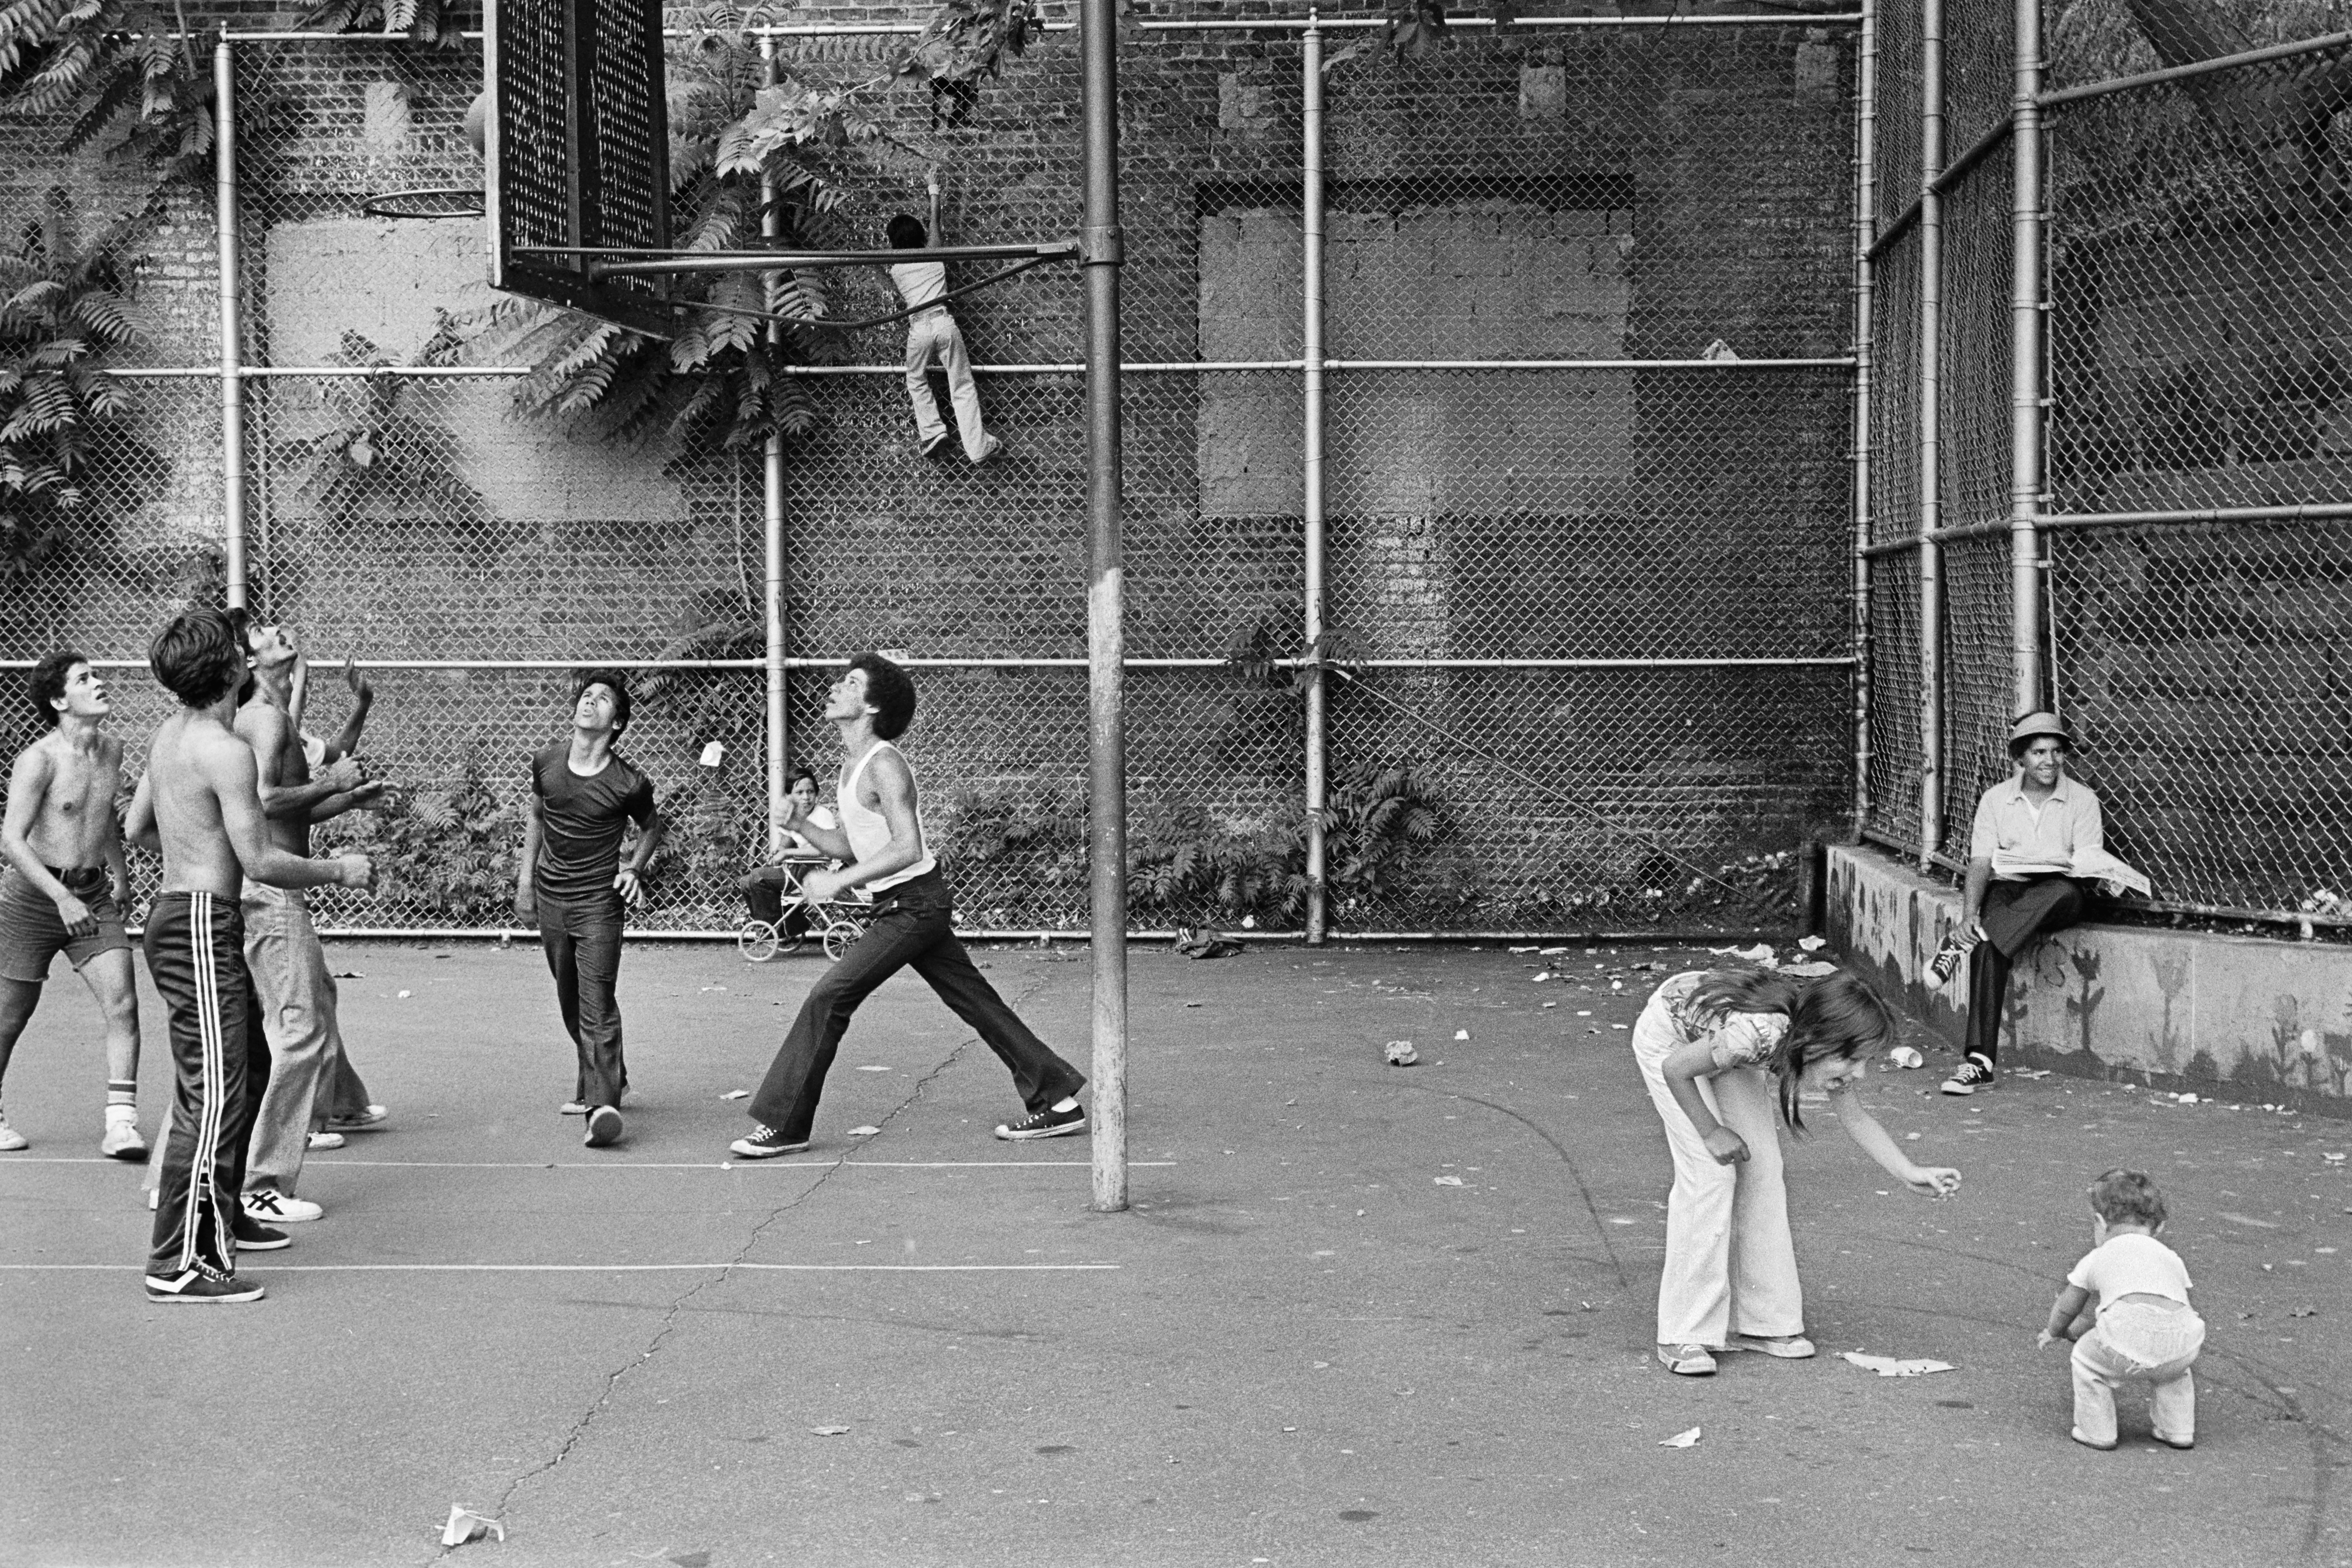 두 건물 사이의 농구 코트에서 농구를 하는 사람들의 사진, 앞에 여자와 아이